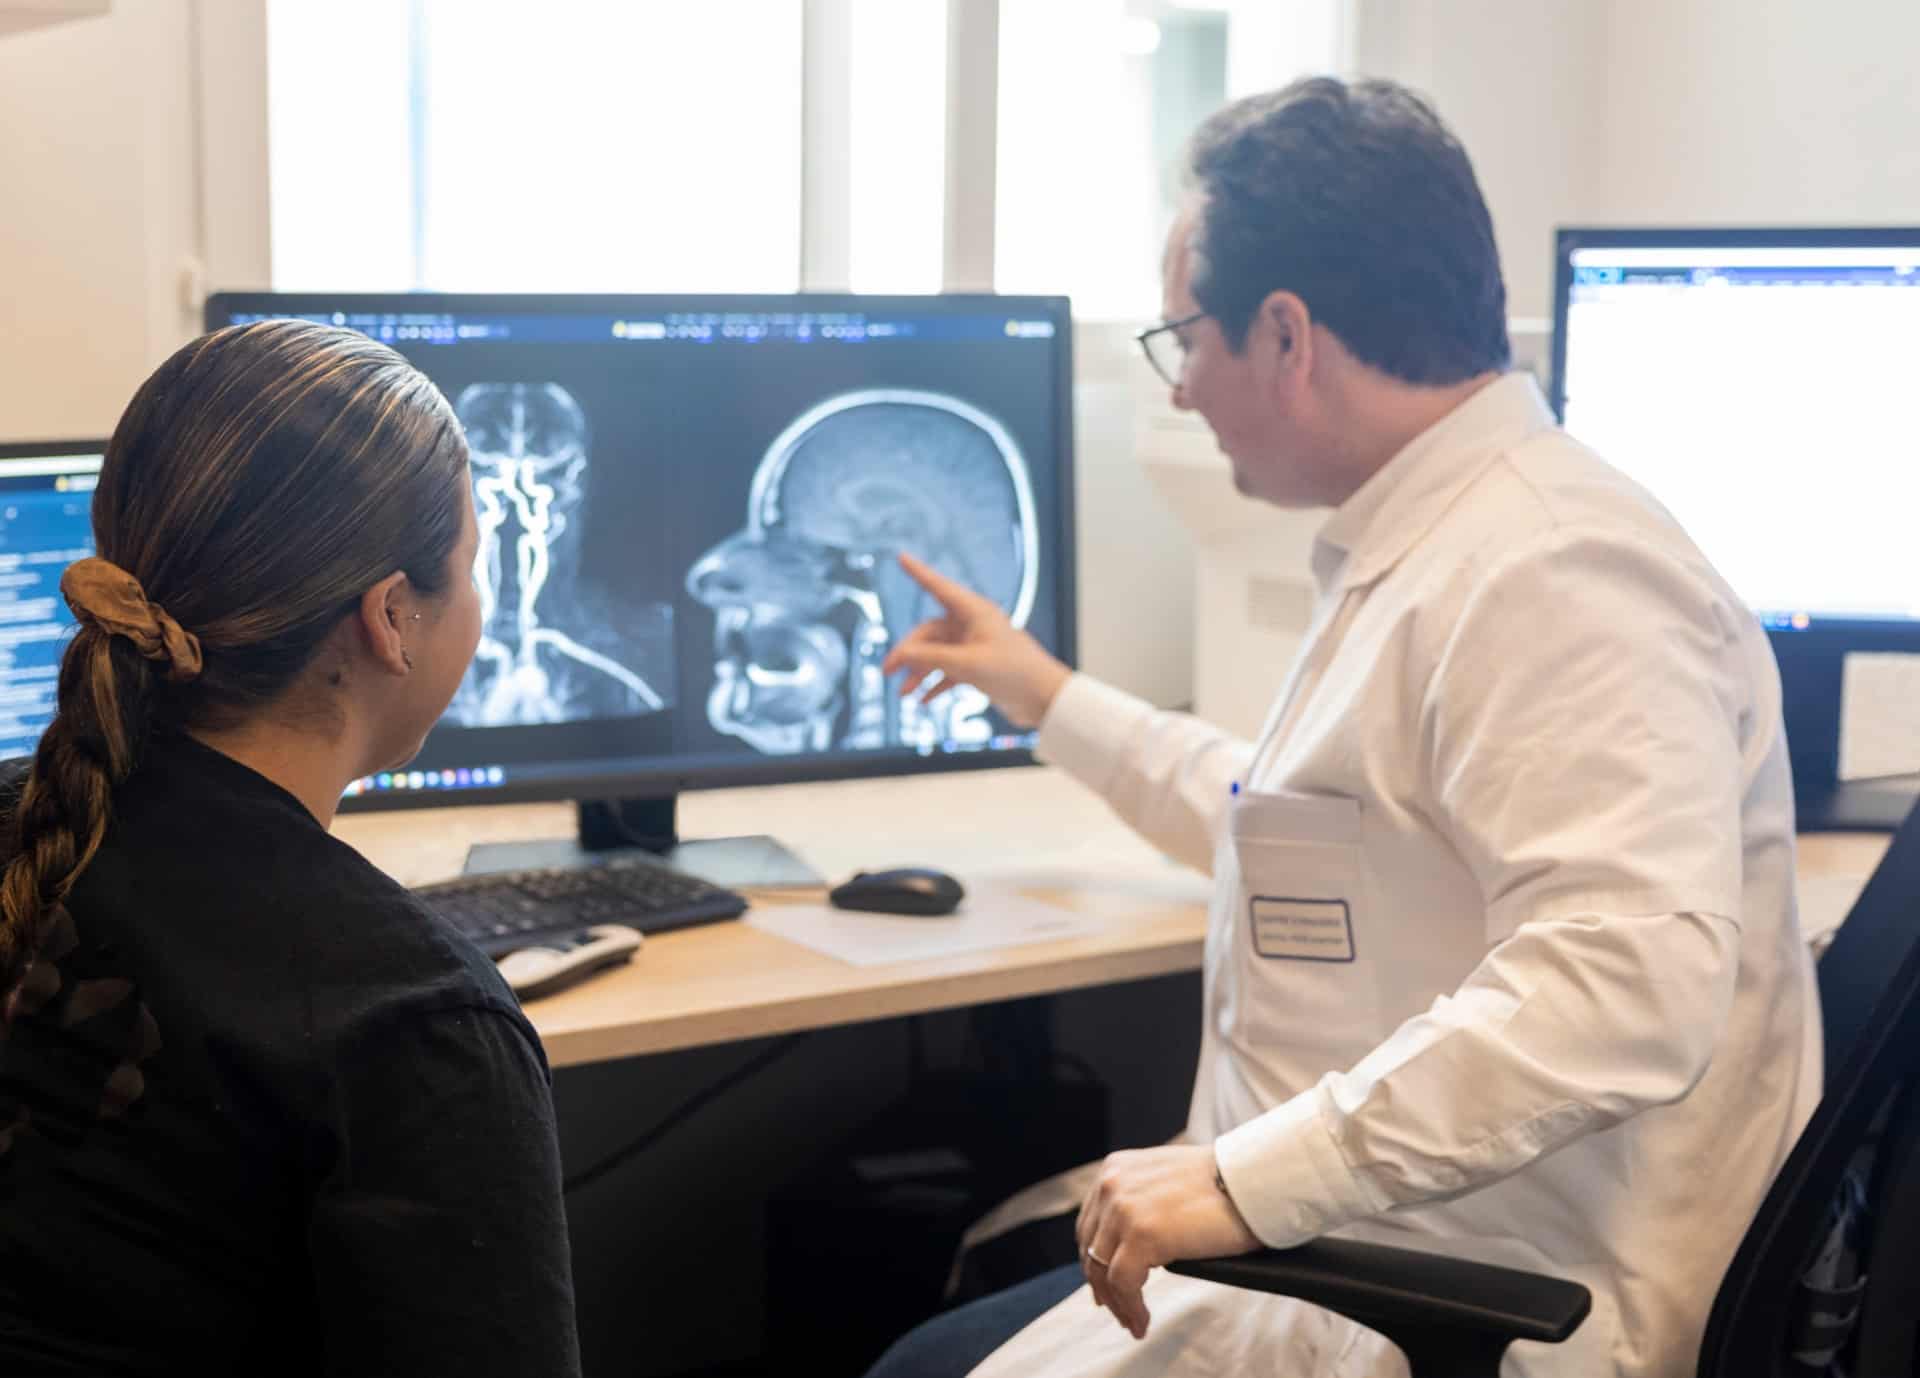 IRM cérébrale | Centre de radiologie IRM et scanner | Imagerie médicale HPA | Antony